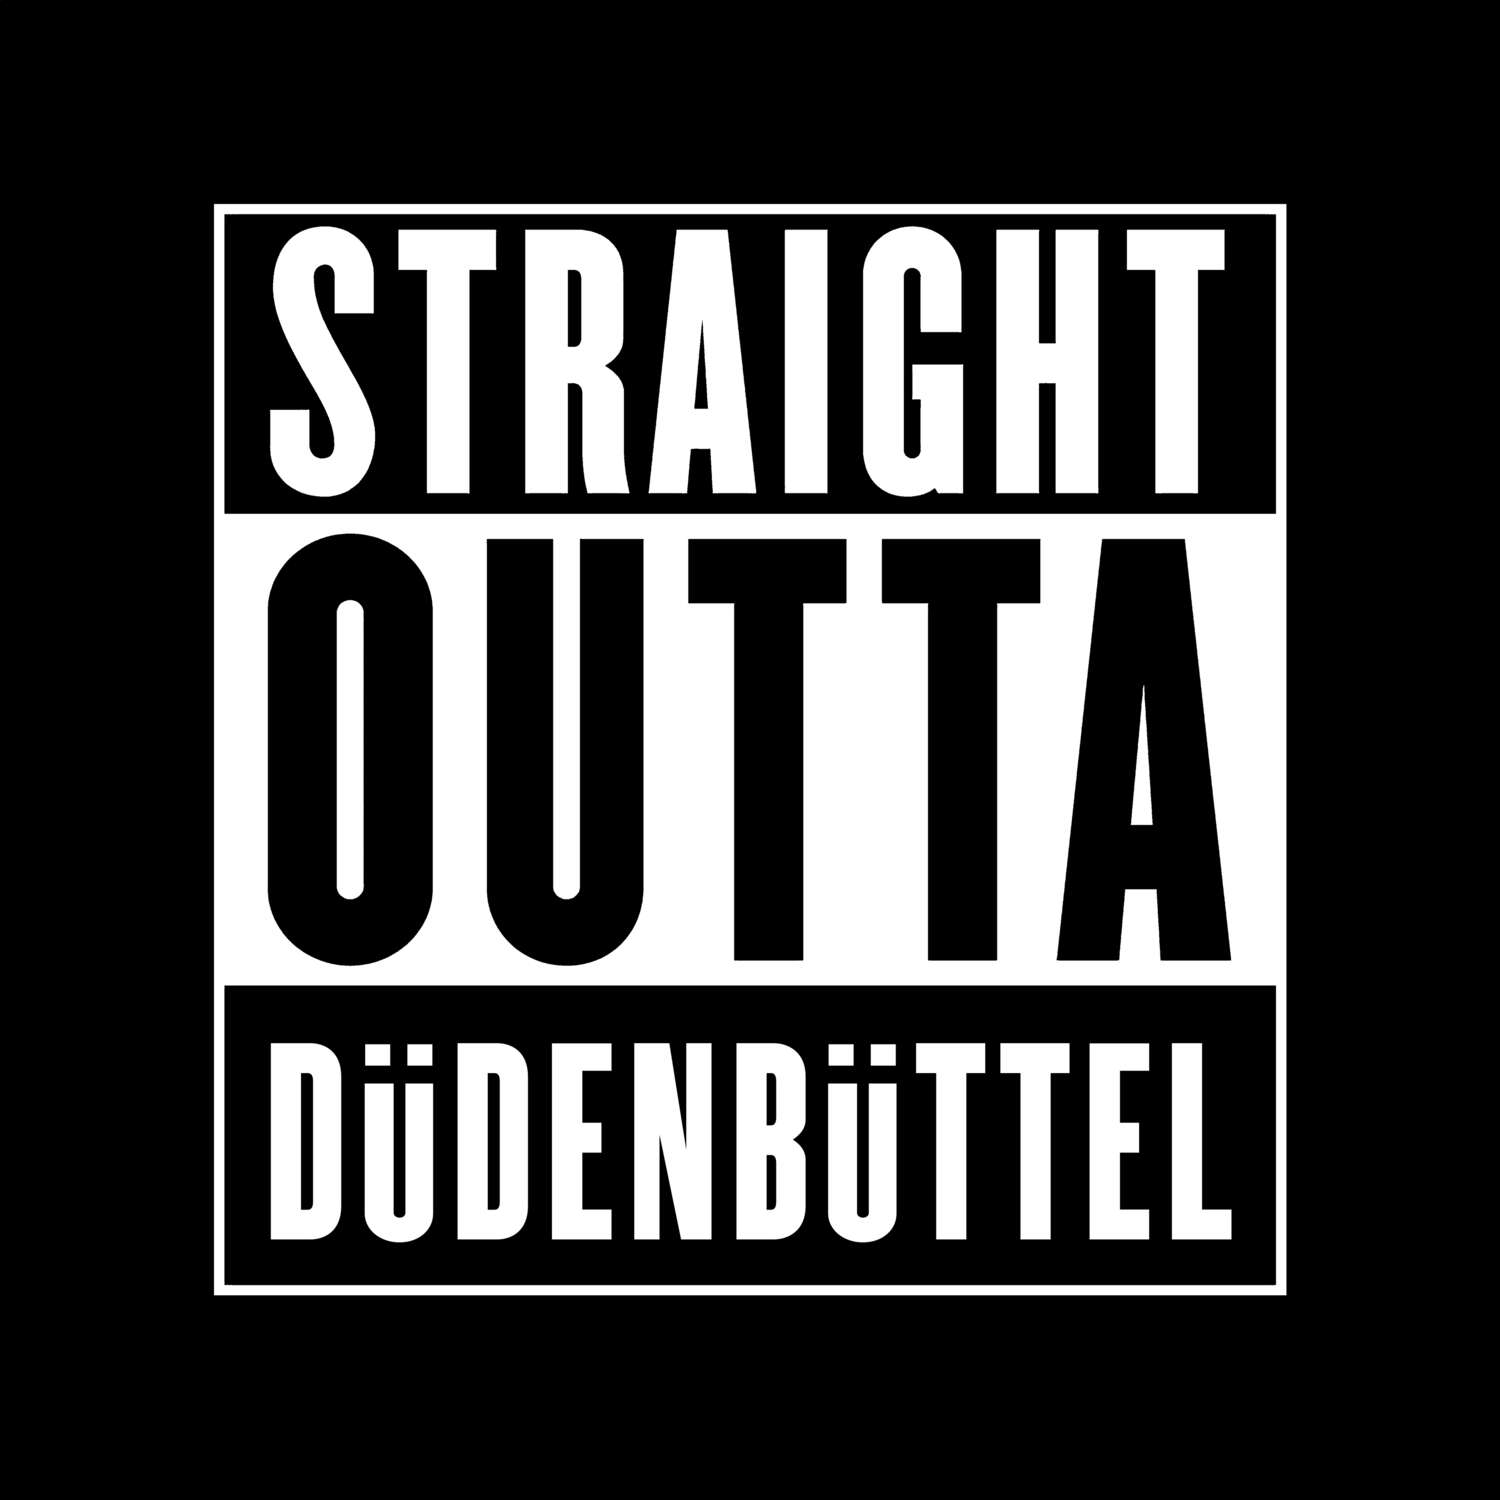 Düdenbüttel T-Shirt »Straight Outta«